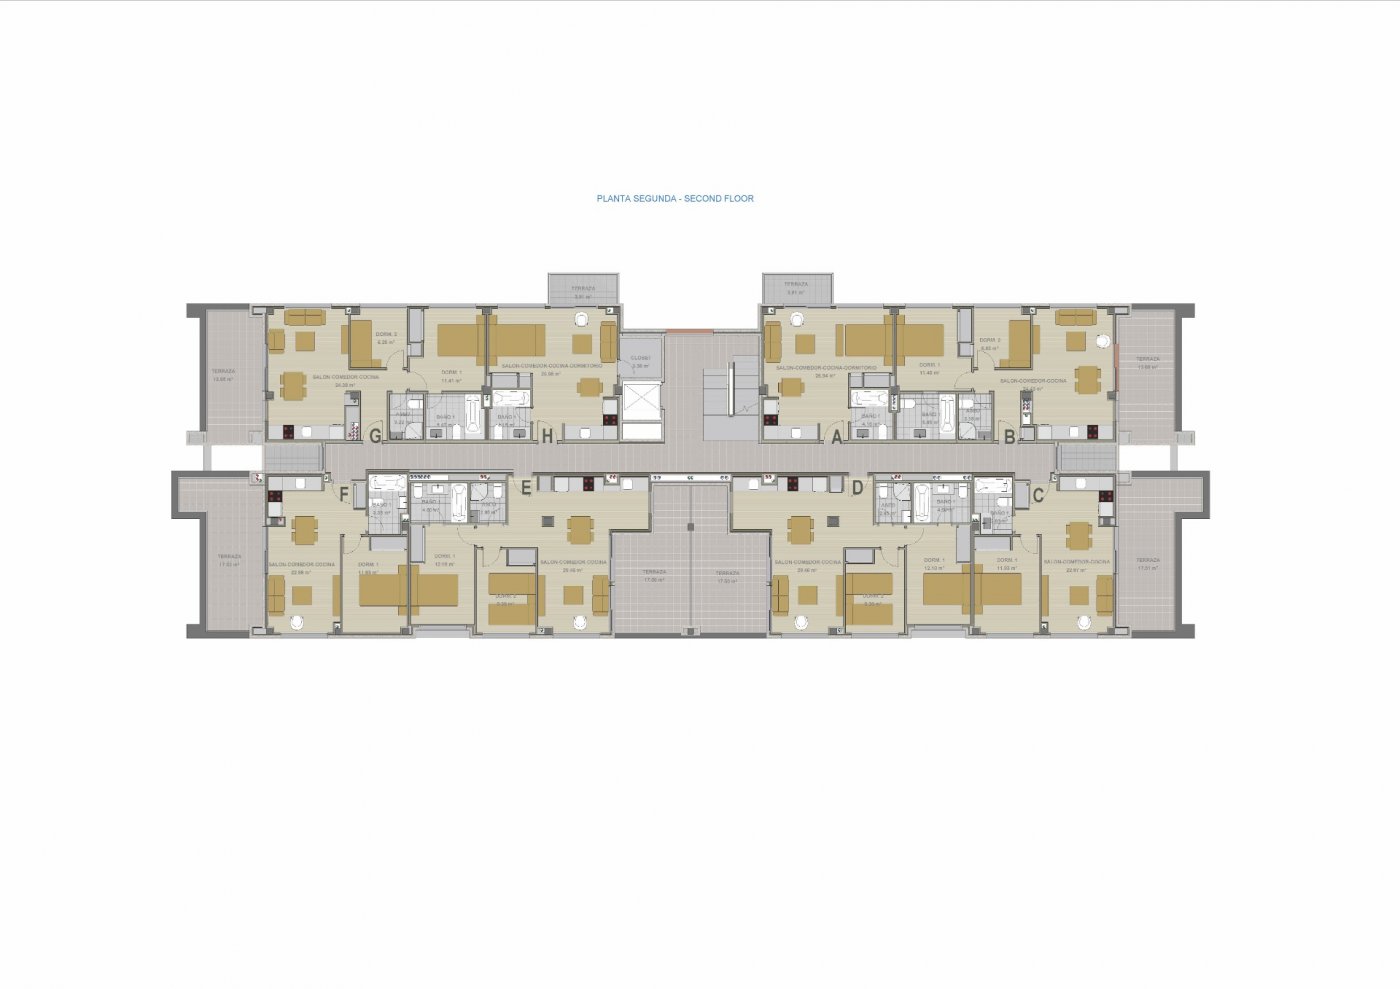 Appartement de nouvelle construction 2 chambres, piscine, parking et débarras à 400 m de la plage à Denia (Alicante)